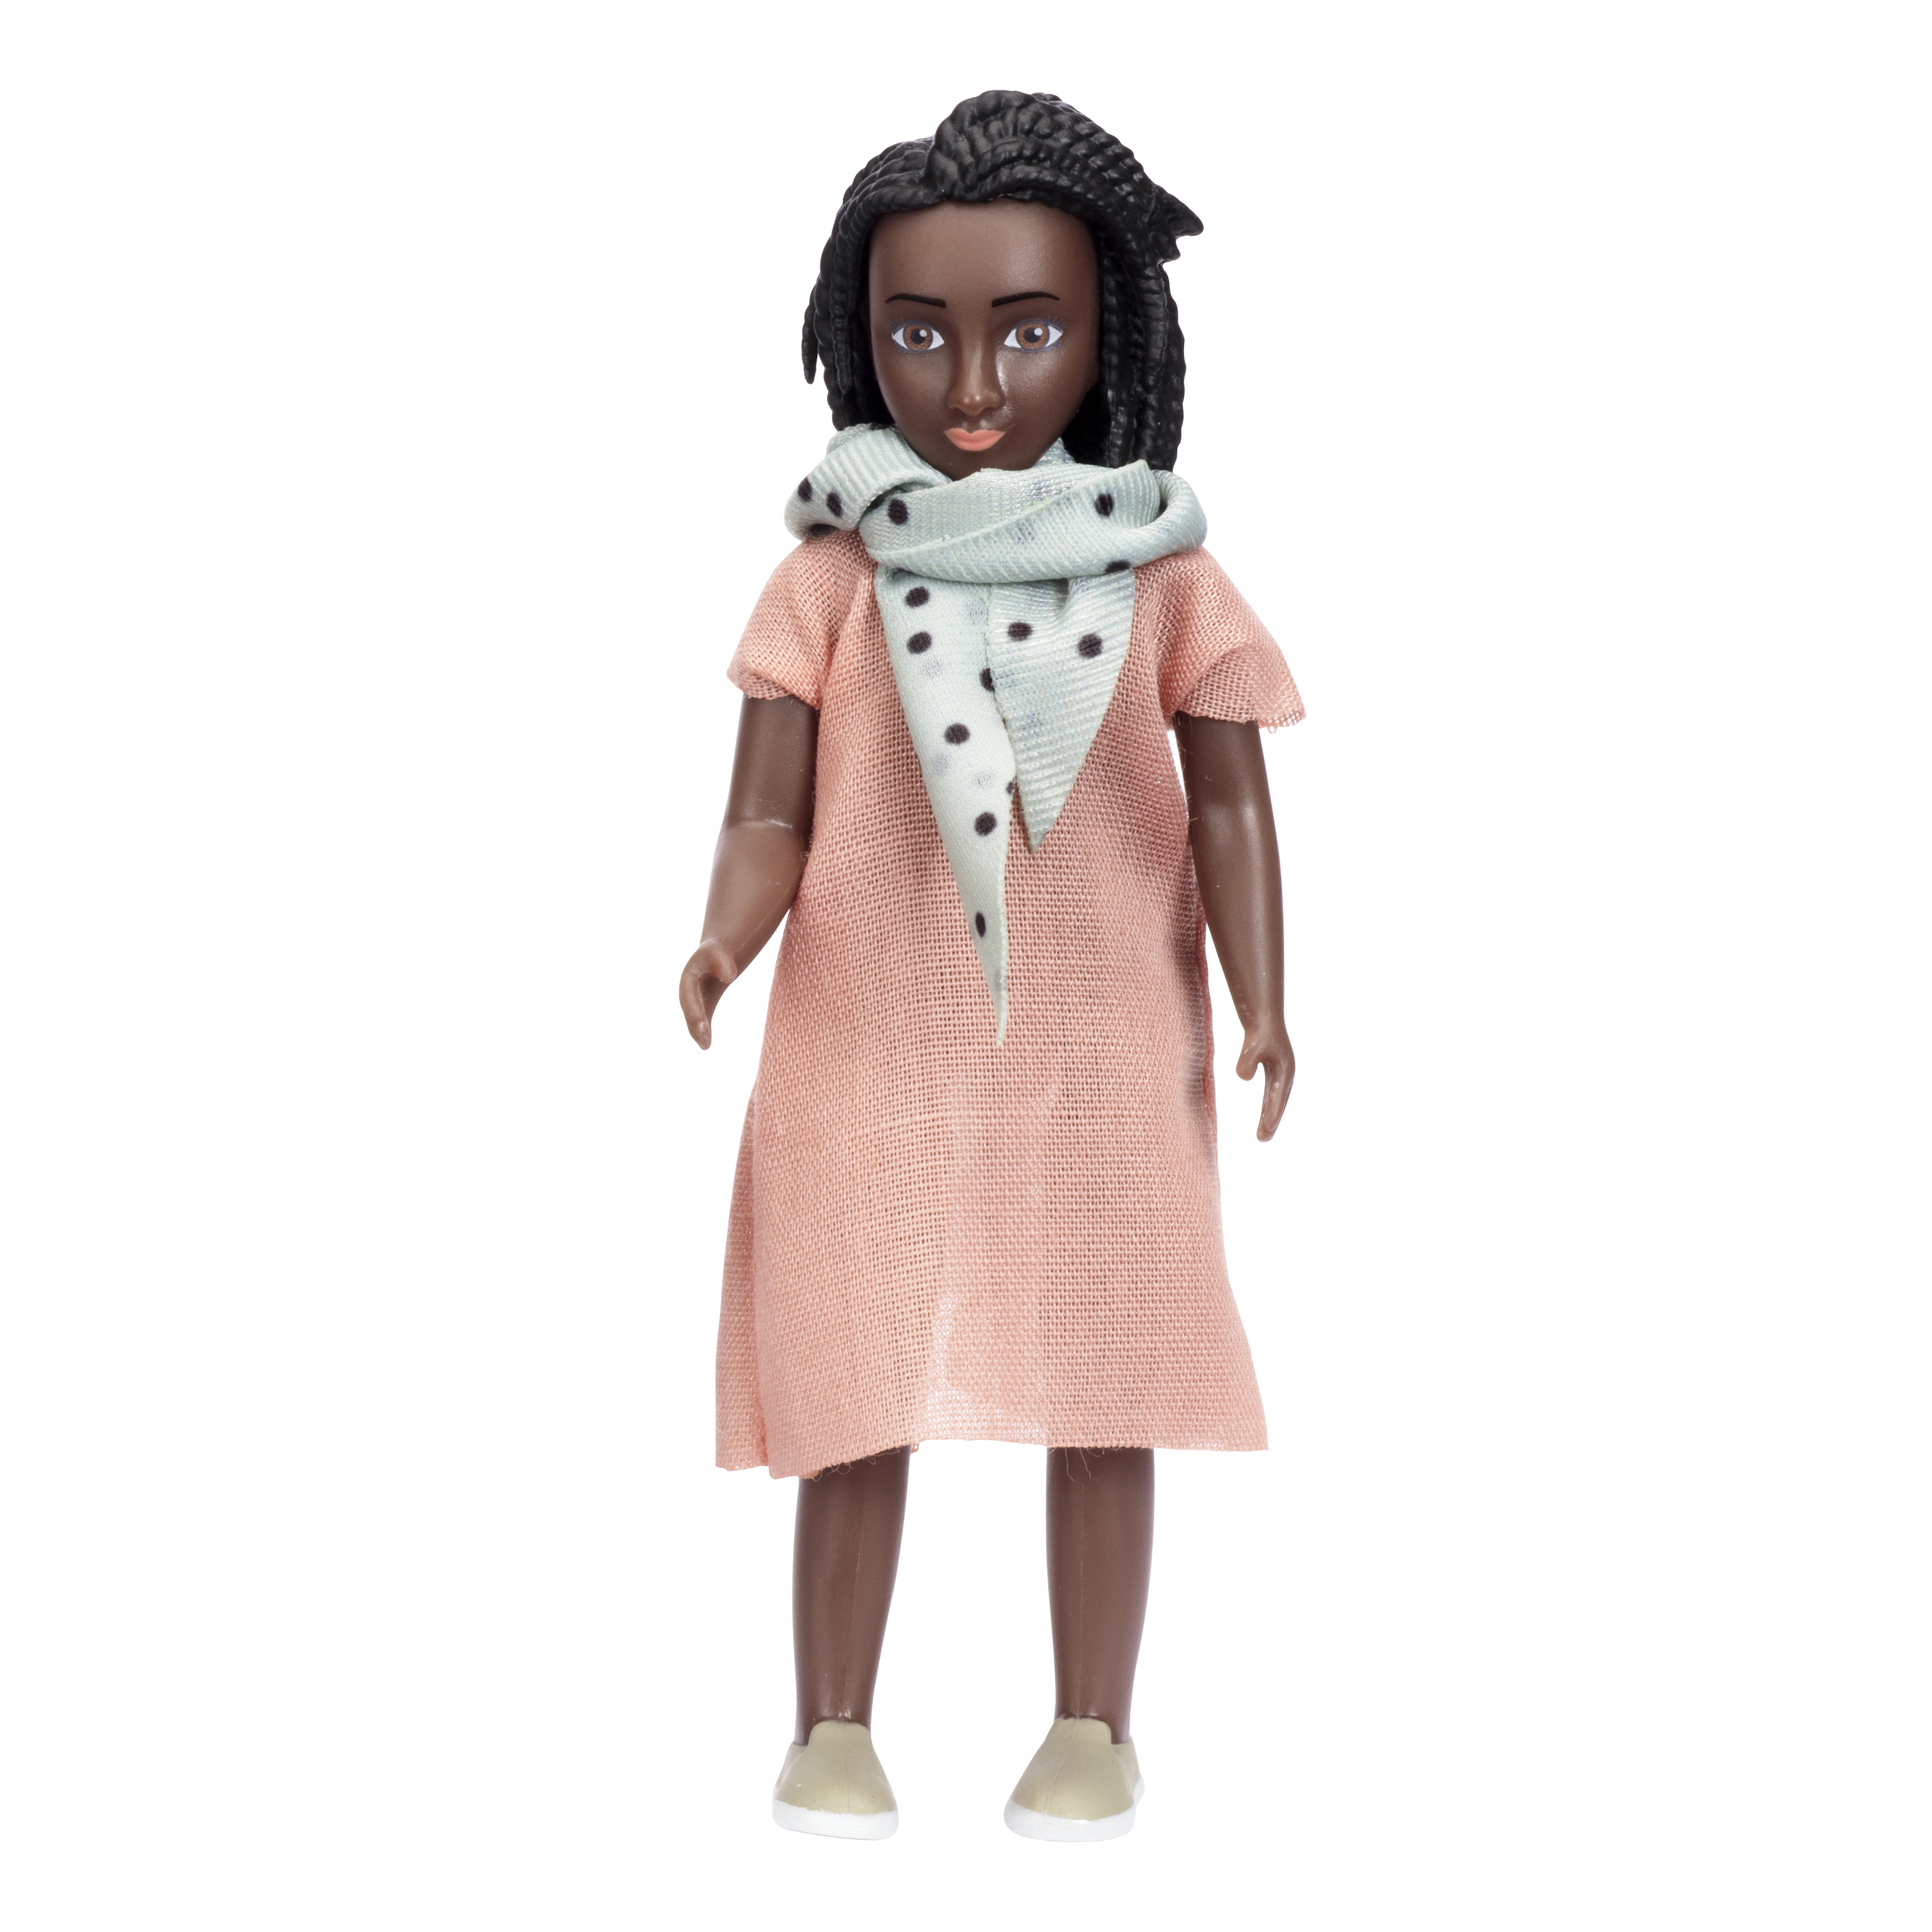 Dark-skinned dolls lundby dollhouse doll billie mother